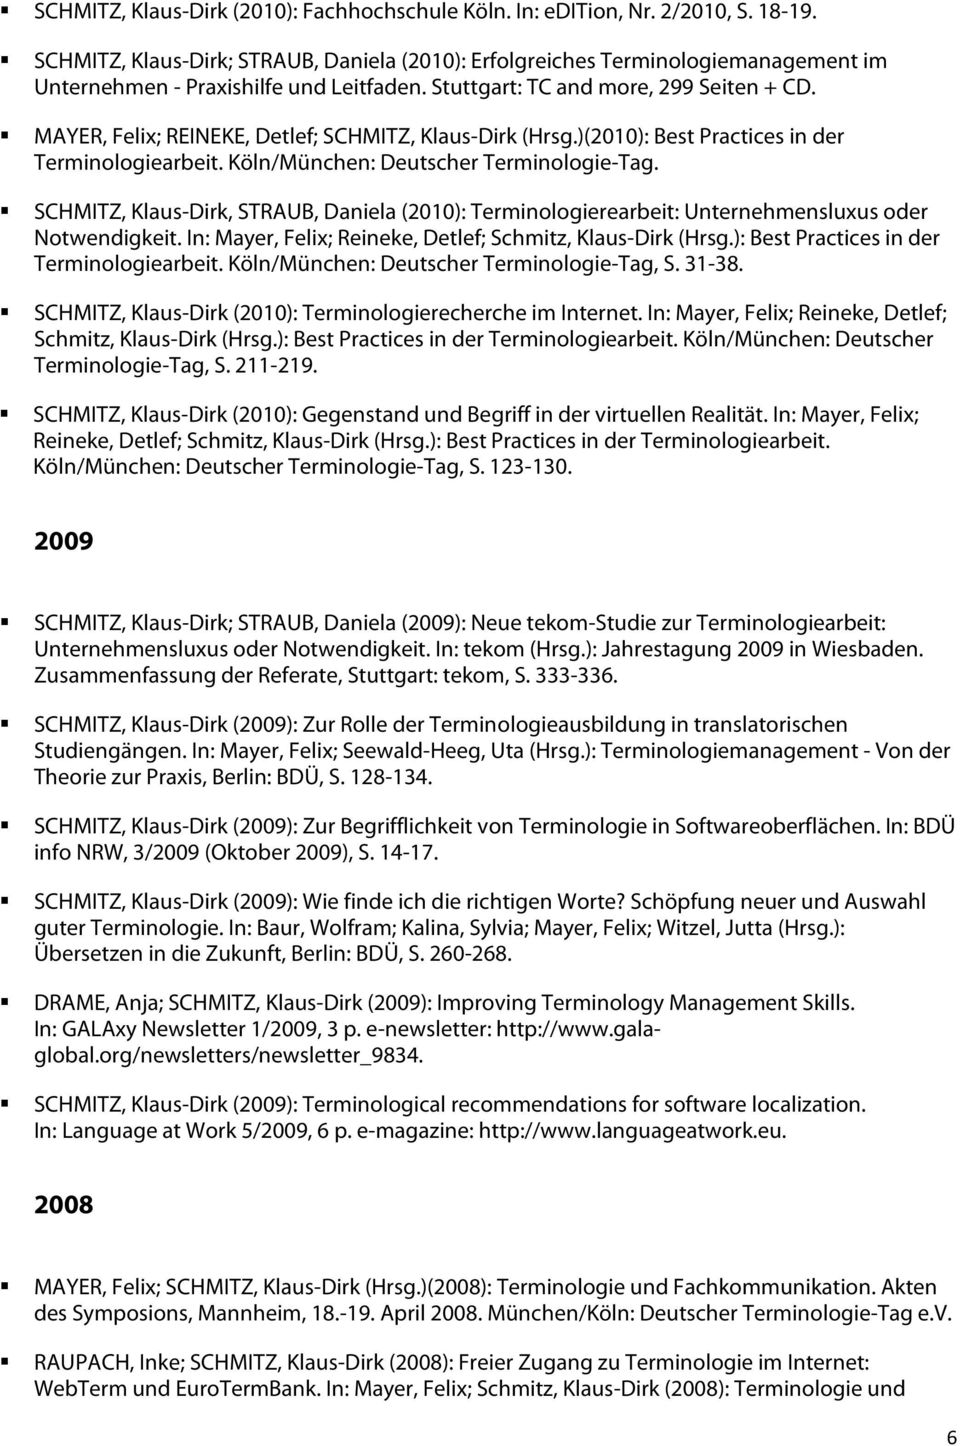 MAYER, Felix; REINEKE, Detlef; SCHMITZ, Klaus-Dirk (Hrsg.)(2010): Best Practices in der Terminologiearbeit. Köln/München: Deutscher Terminologie-Tag.